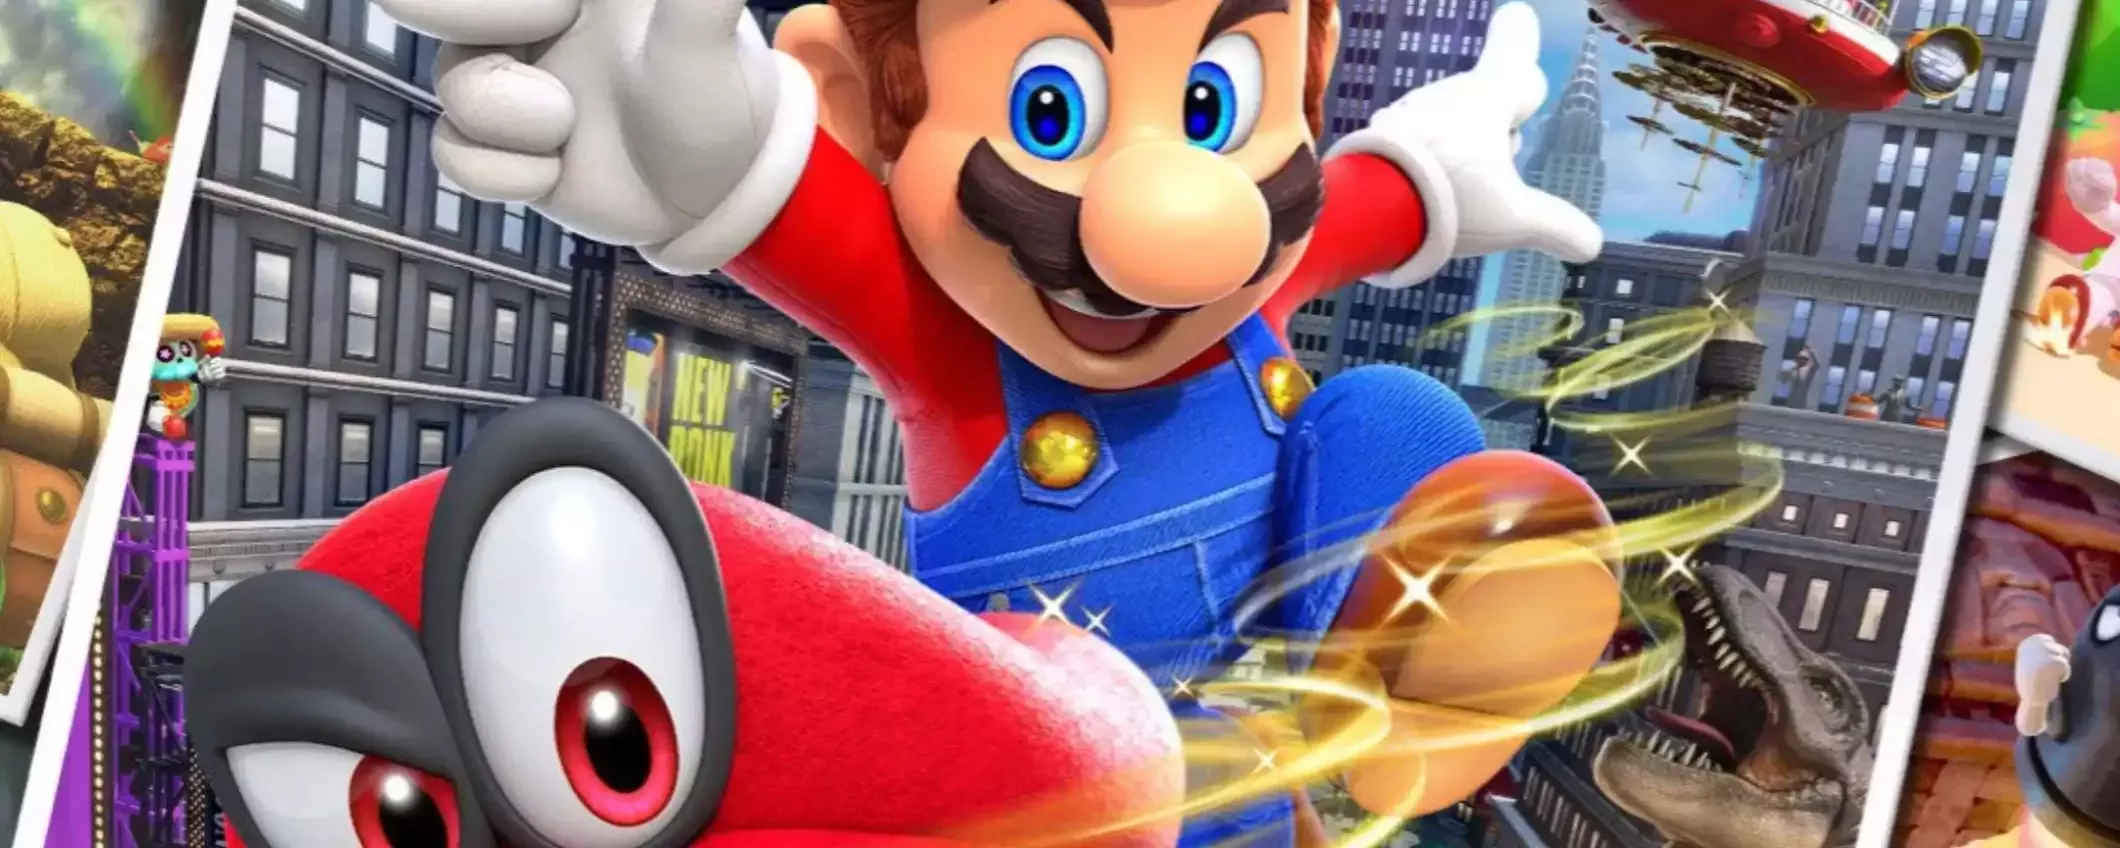 Super Mario Odyssey: prezzo speciale su Amazon, costa meno di 47€